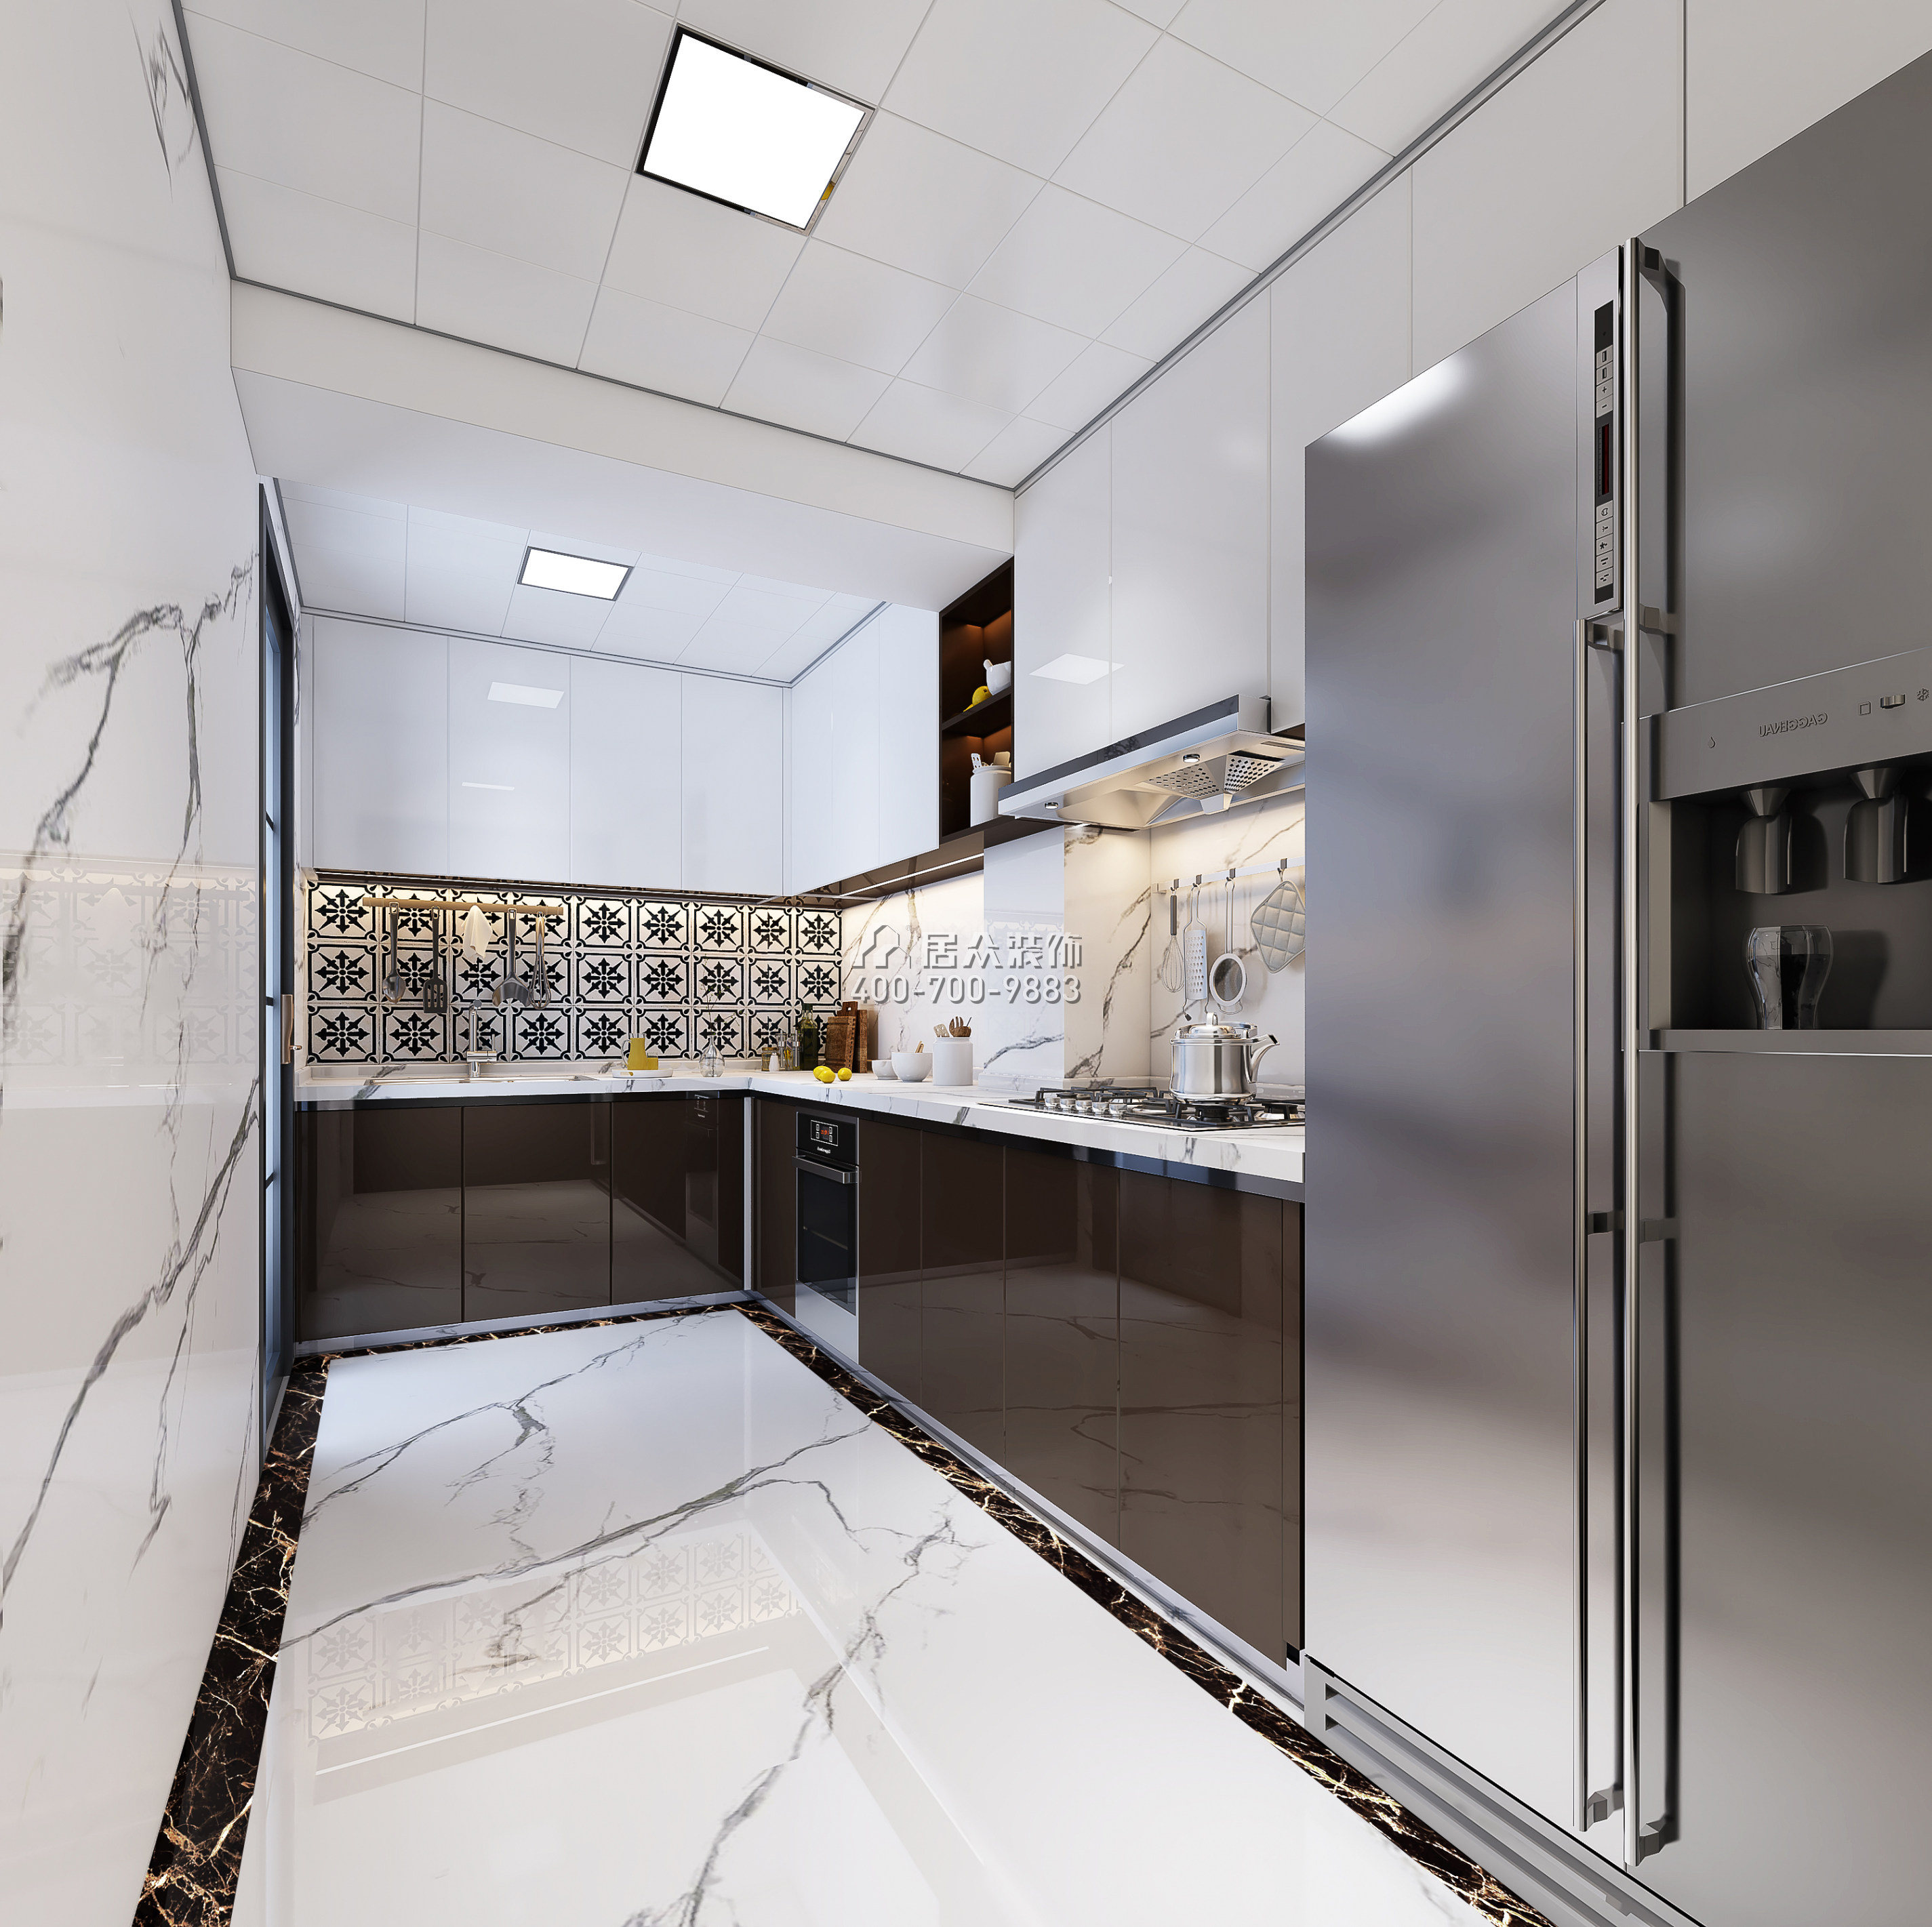 華潤城一期150平方米現代簡約風格平層戶型廚房裝修效果圖